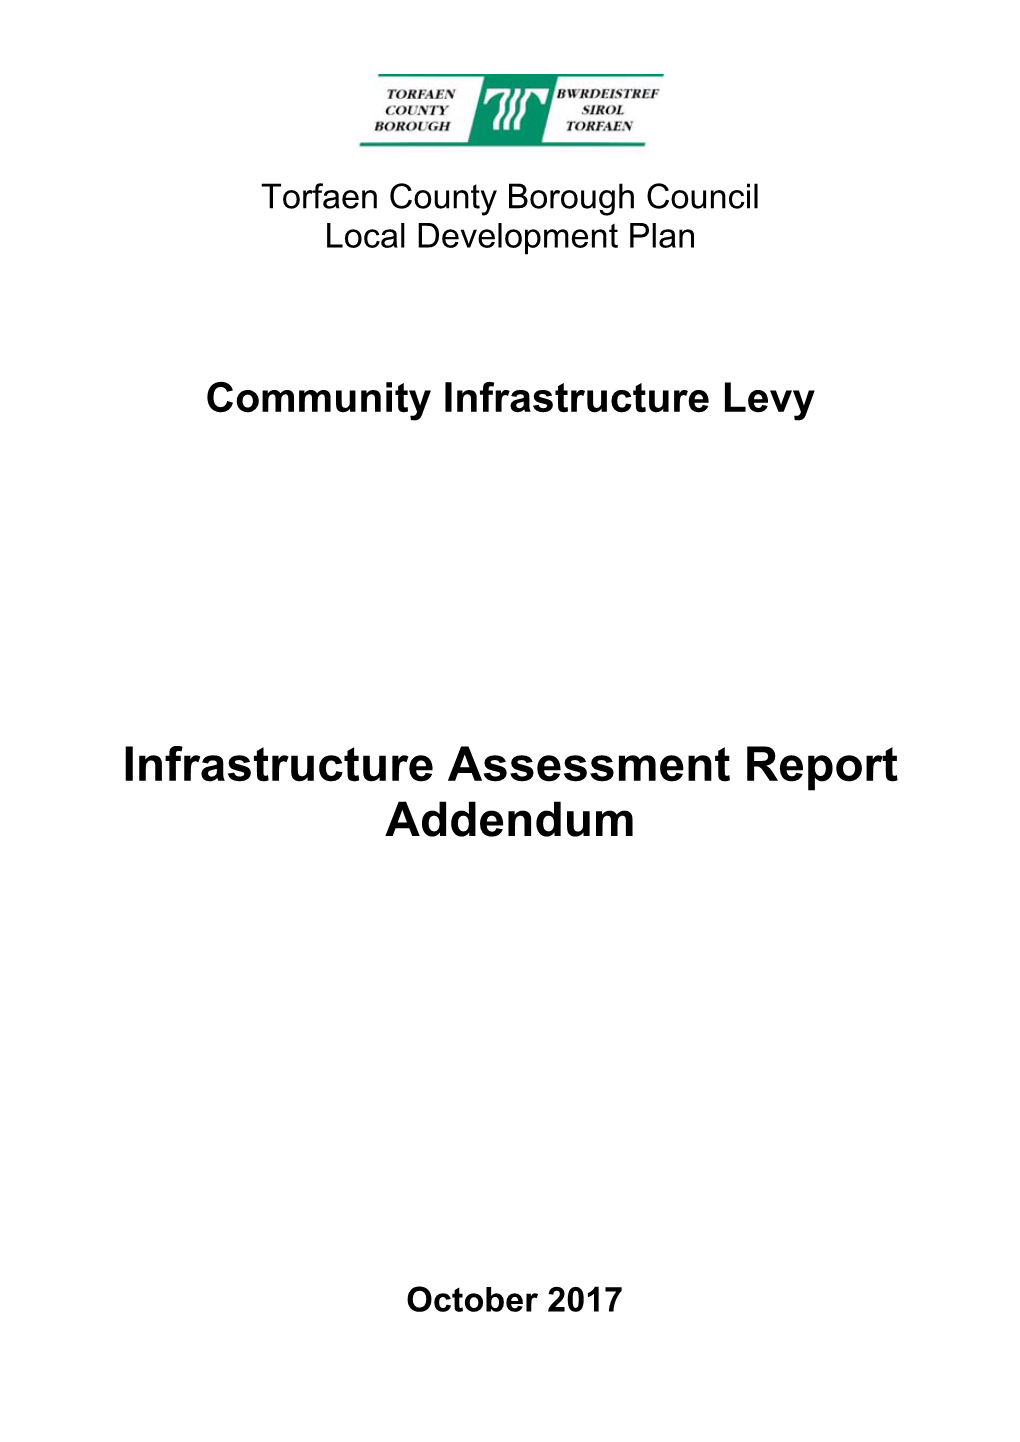 Infrastructure Assessment Report Addendum